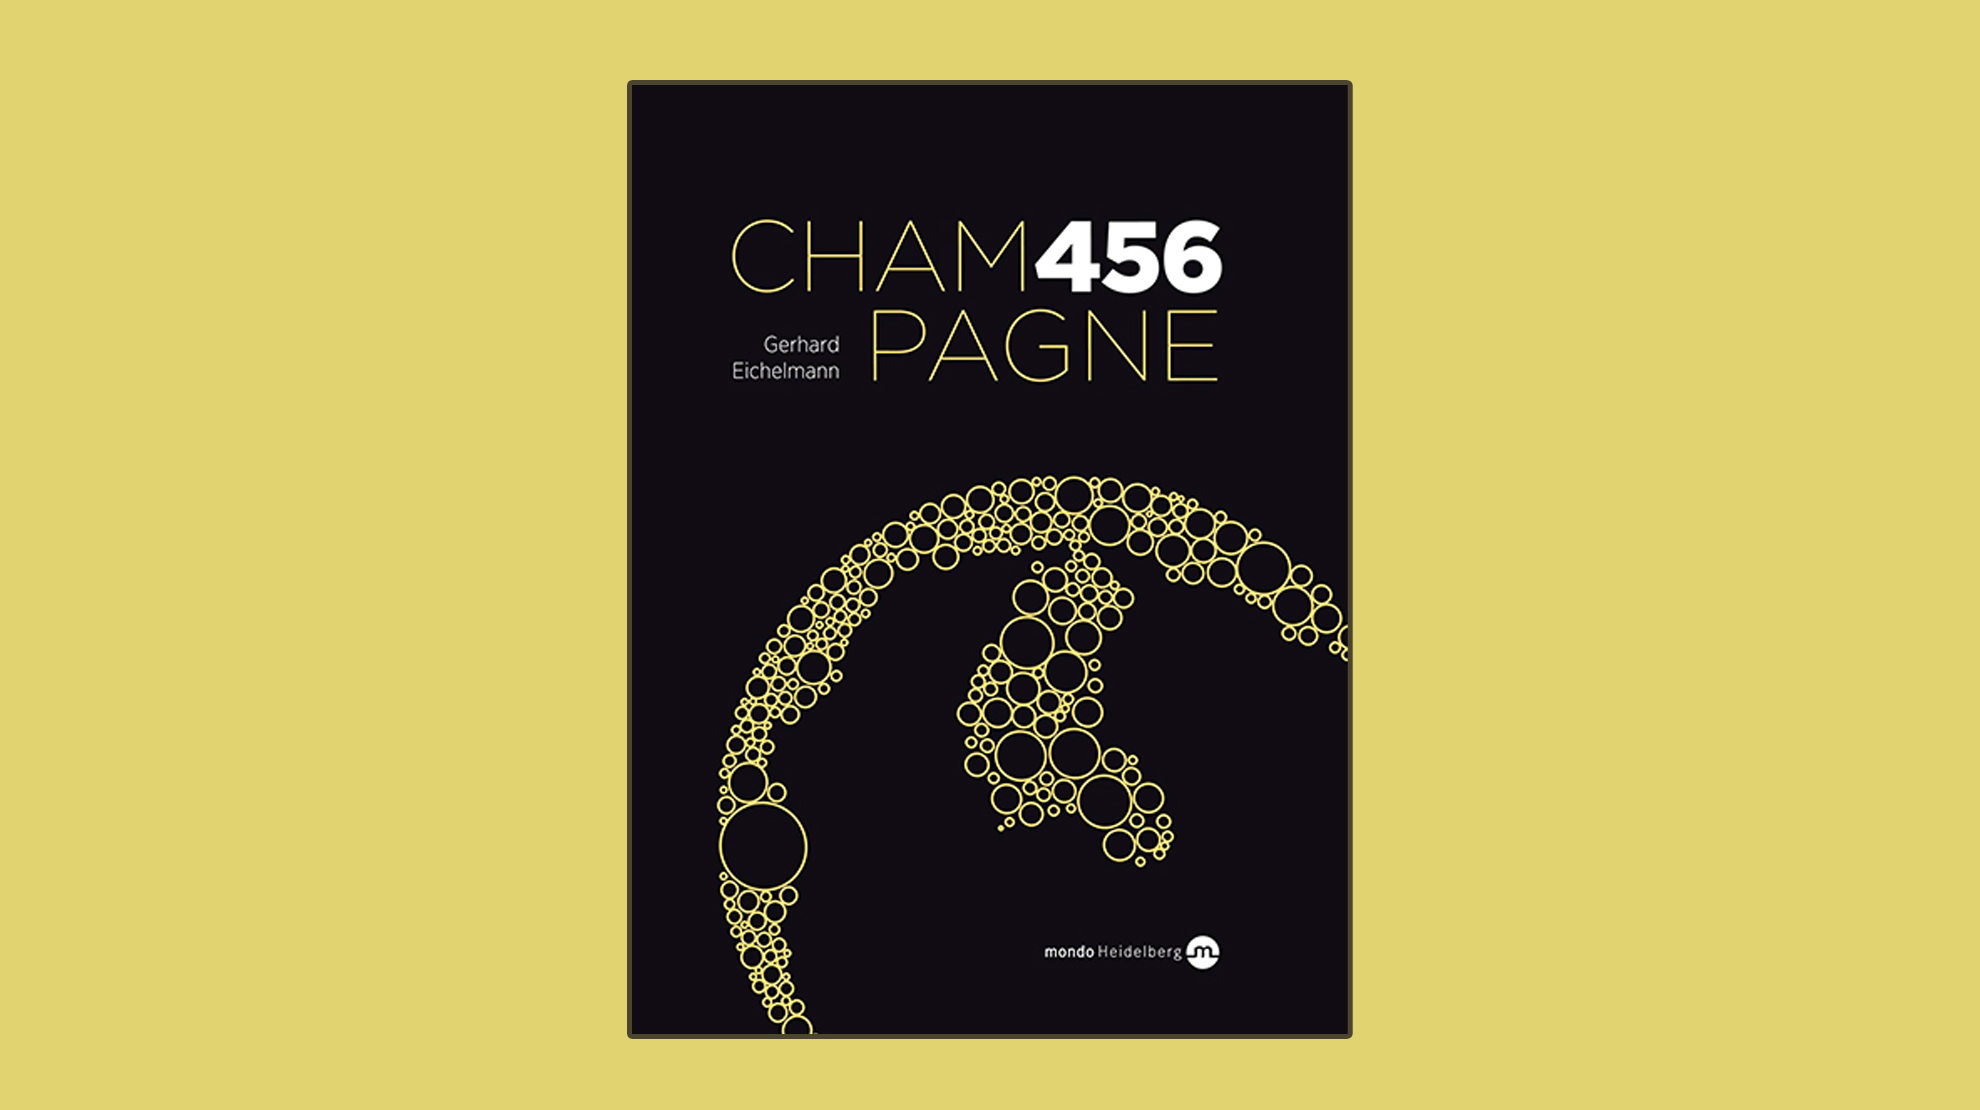 Gerhard Eichelmann – 456 Erzeuger und 2 800 Champagner